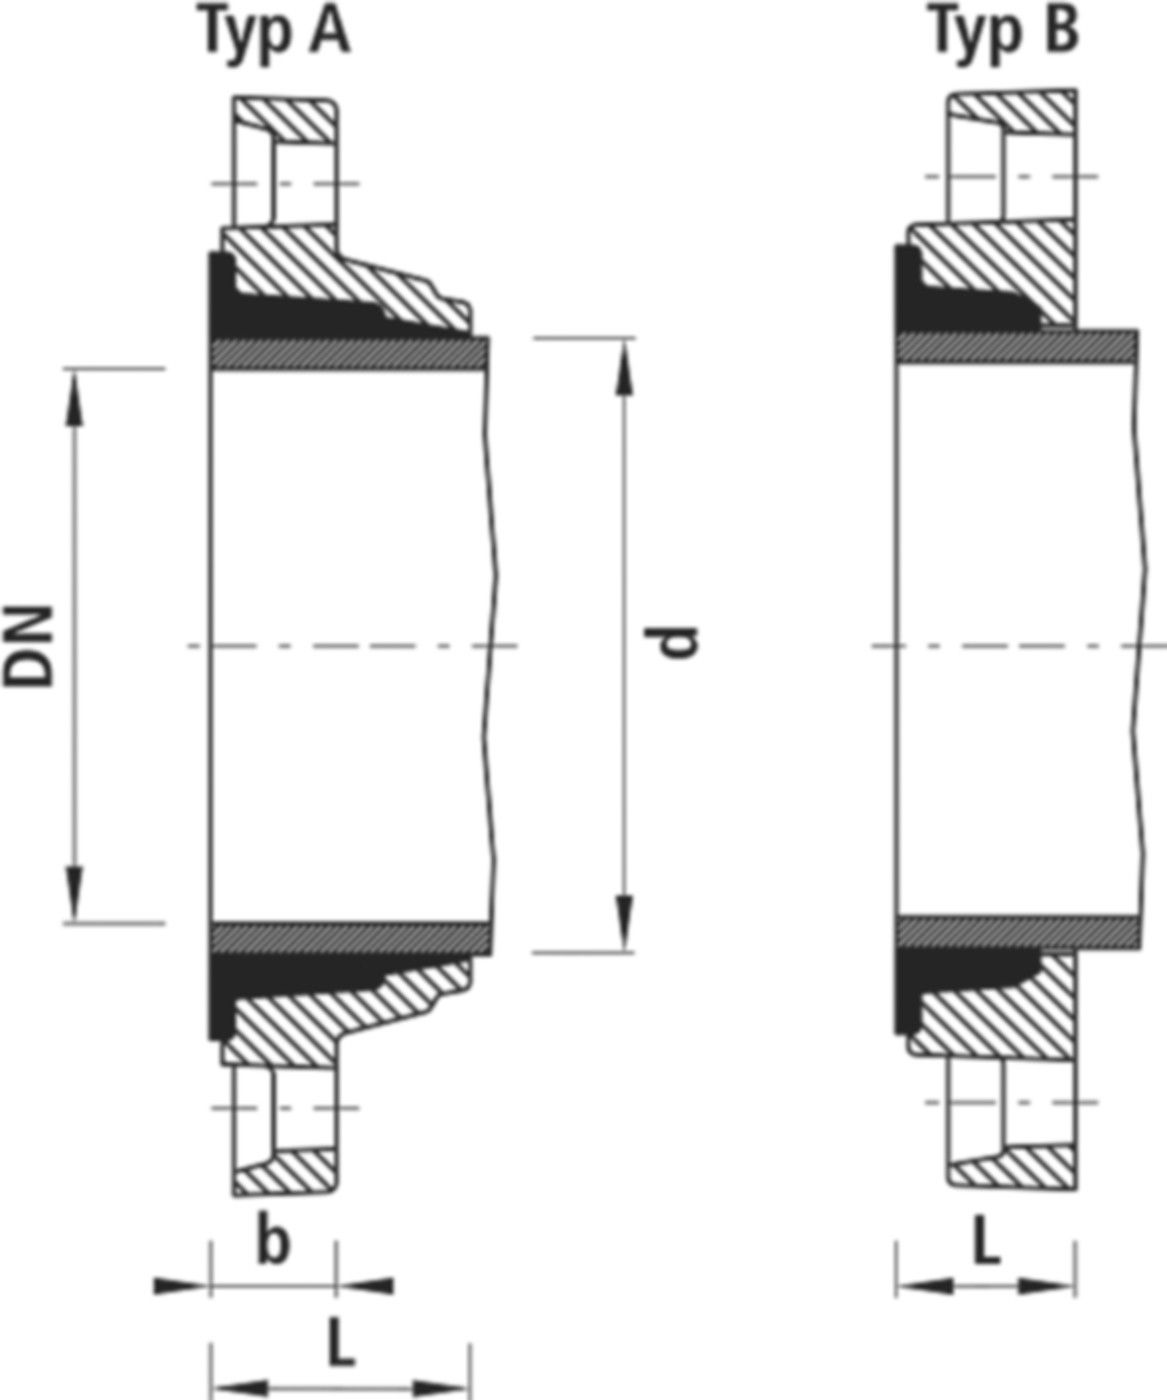 Zweikammer-Flansch für Stahlrohre 7130 PN 10/16 DN 80 / AD 89mm - Hawle Flanschformstücke